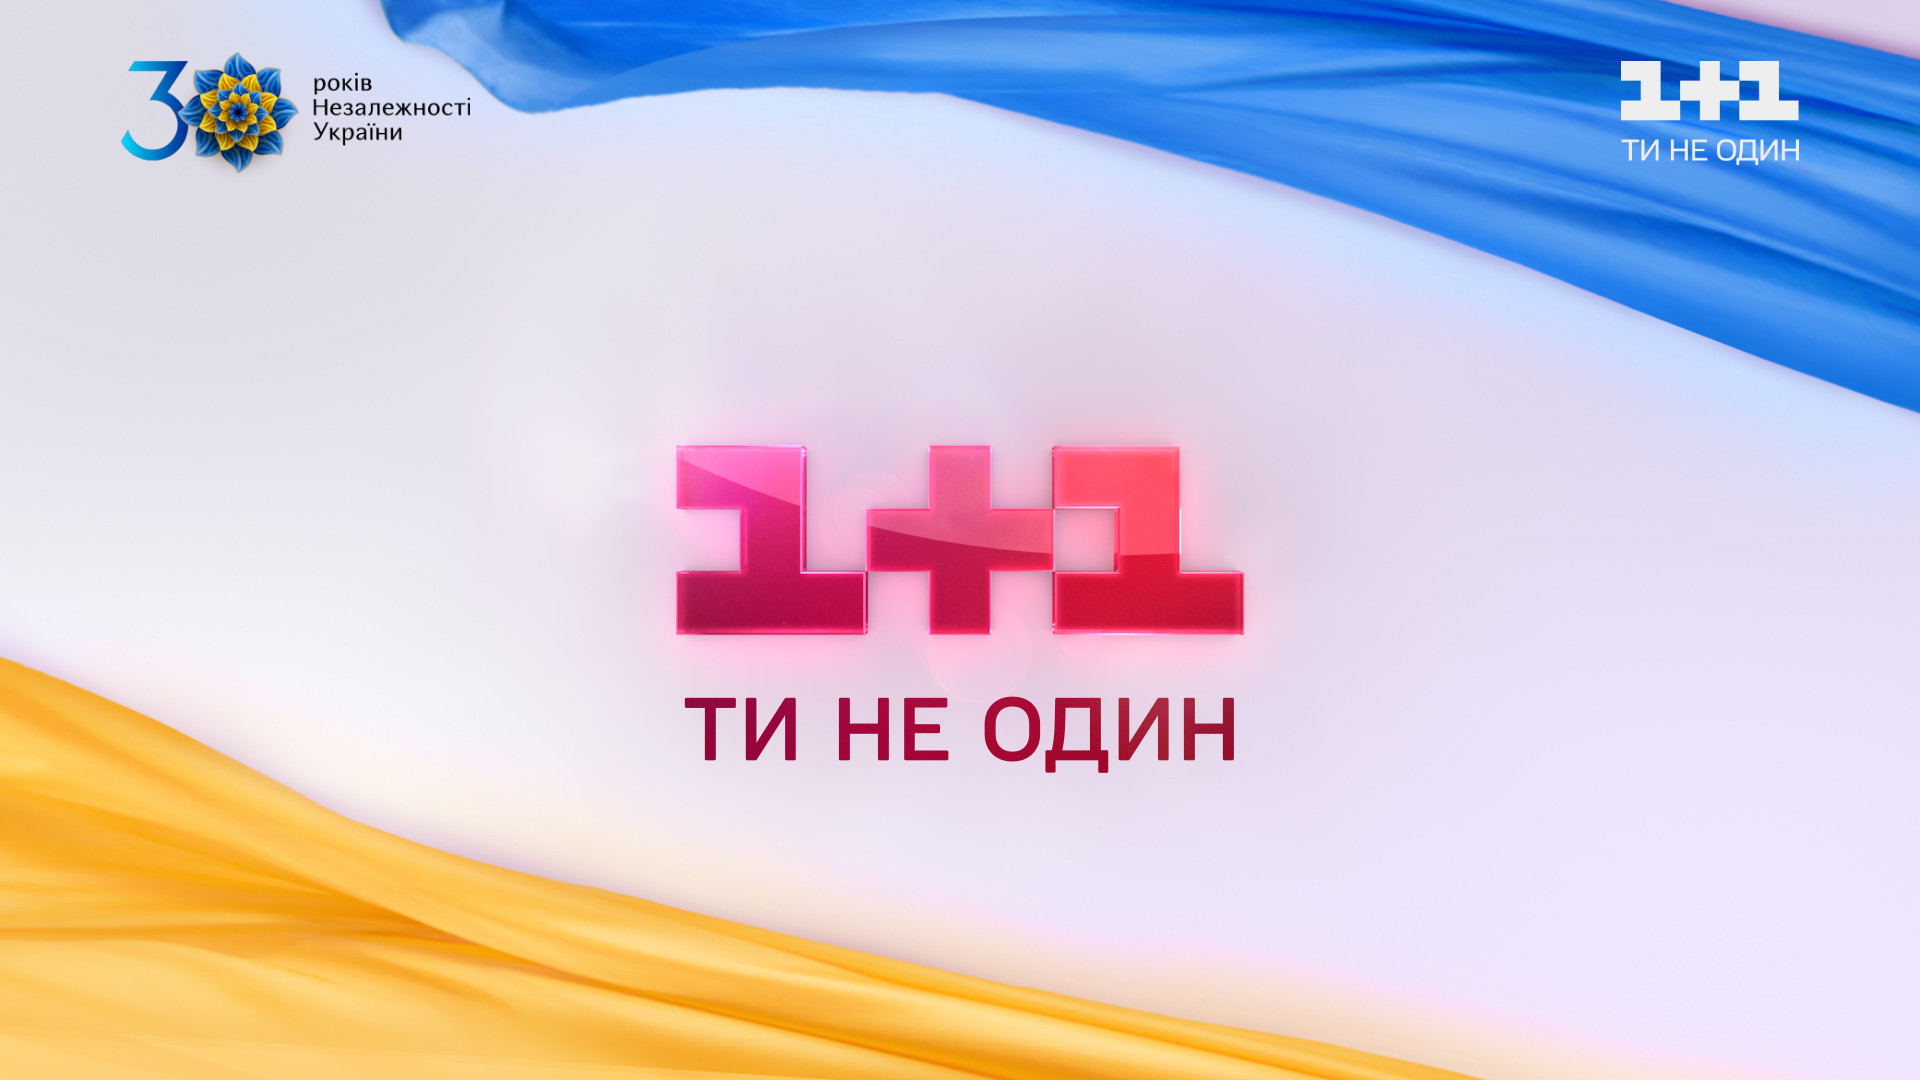 мероприятия и инициативы, посвященные 30-й годовщине Независимости Украины